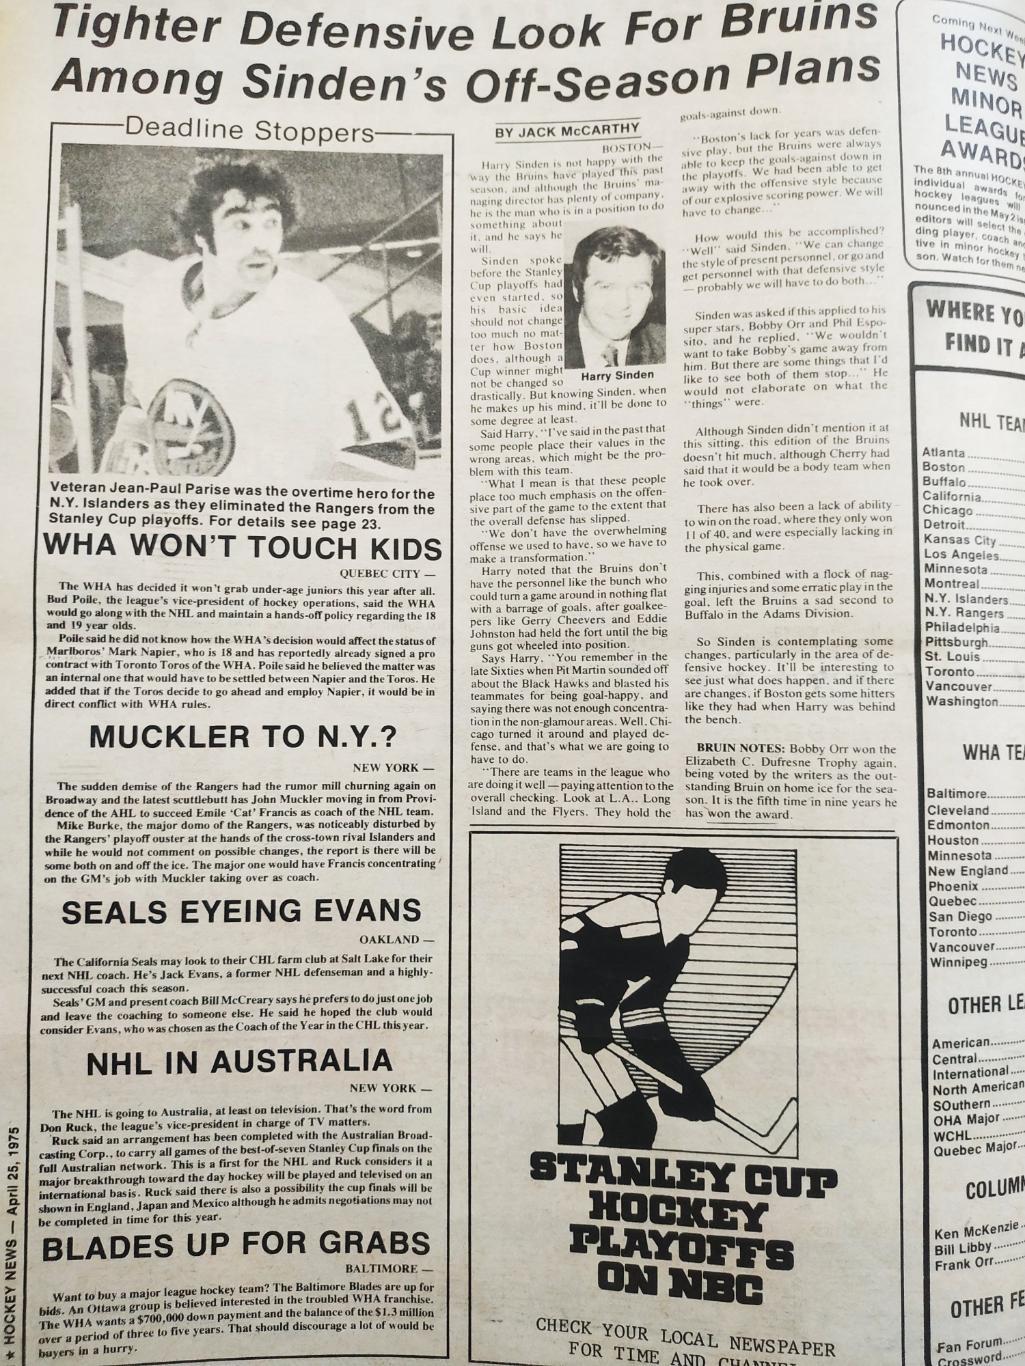 ХОККЕЙ ЖУРНАЛ ЕЖЕНЕДЕЛЬНИК НХЛ НОВОСТИ ХОККЕЯ APR.25 1975 NHL THE HOCKEY NEWS 1